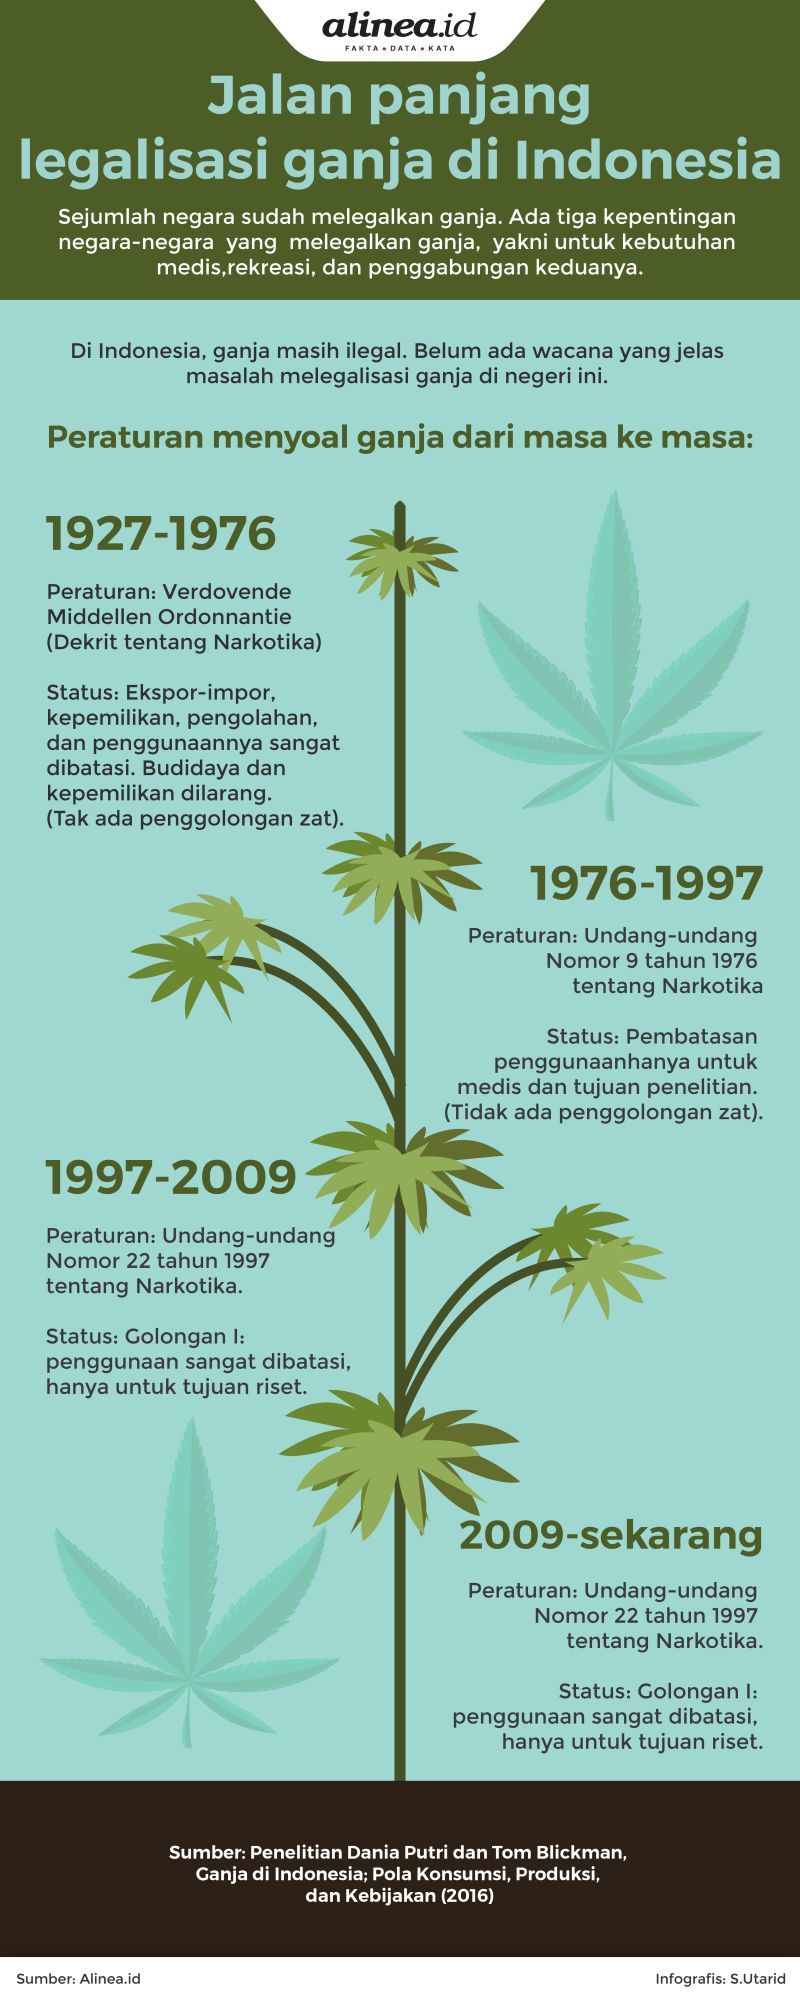 Jalan panjang legalisasi ganja di Indonesia. Alinea.id.